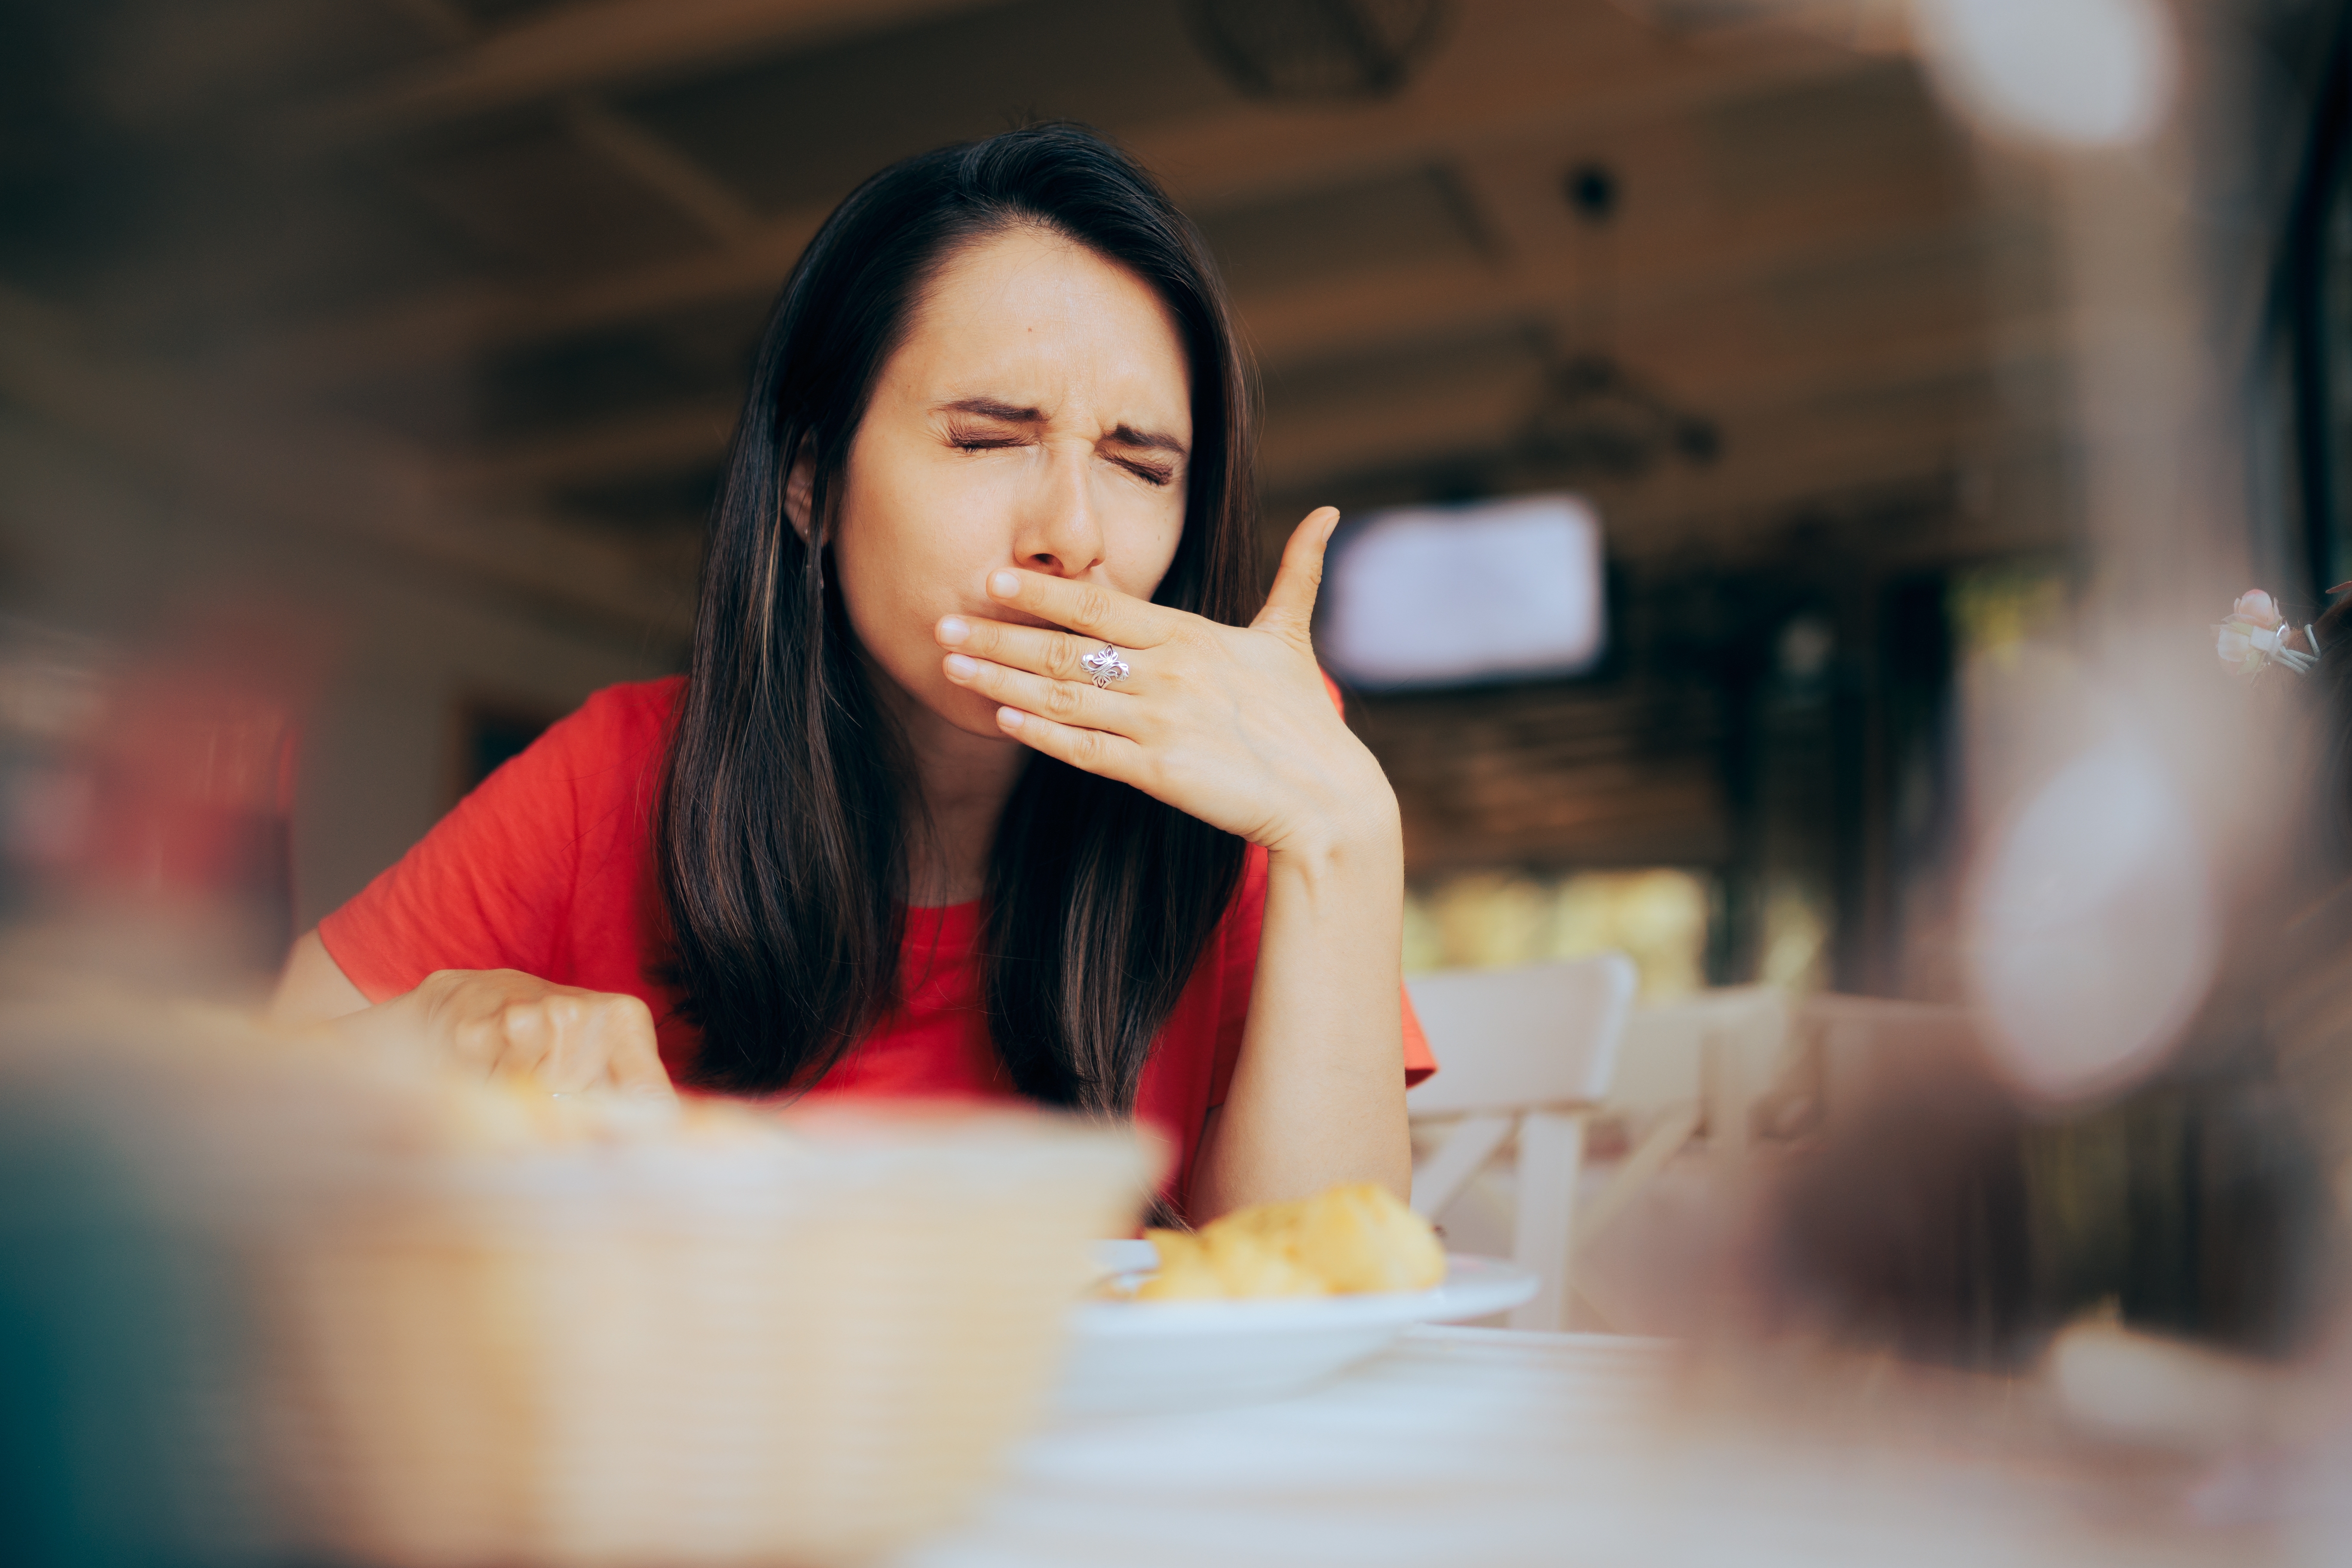 Woman doesn't like food | Shutterstock